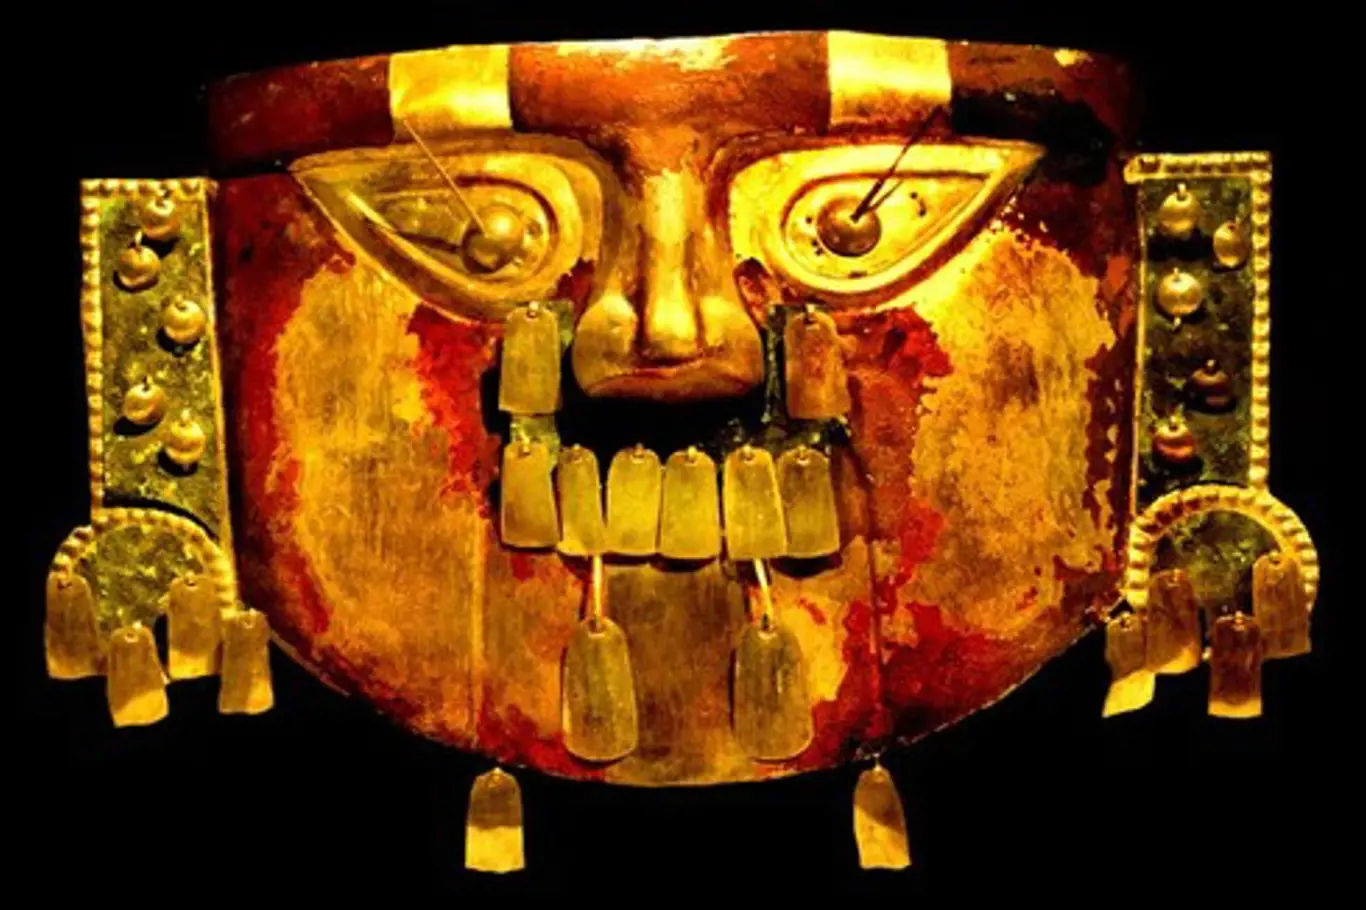 Zlatá pohřební maska sicánské kultury; Sikánské metropolitní muzeum